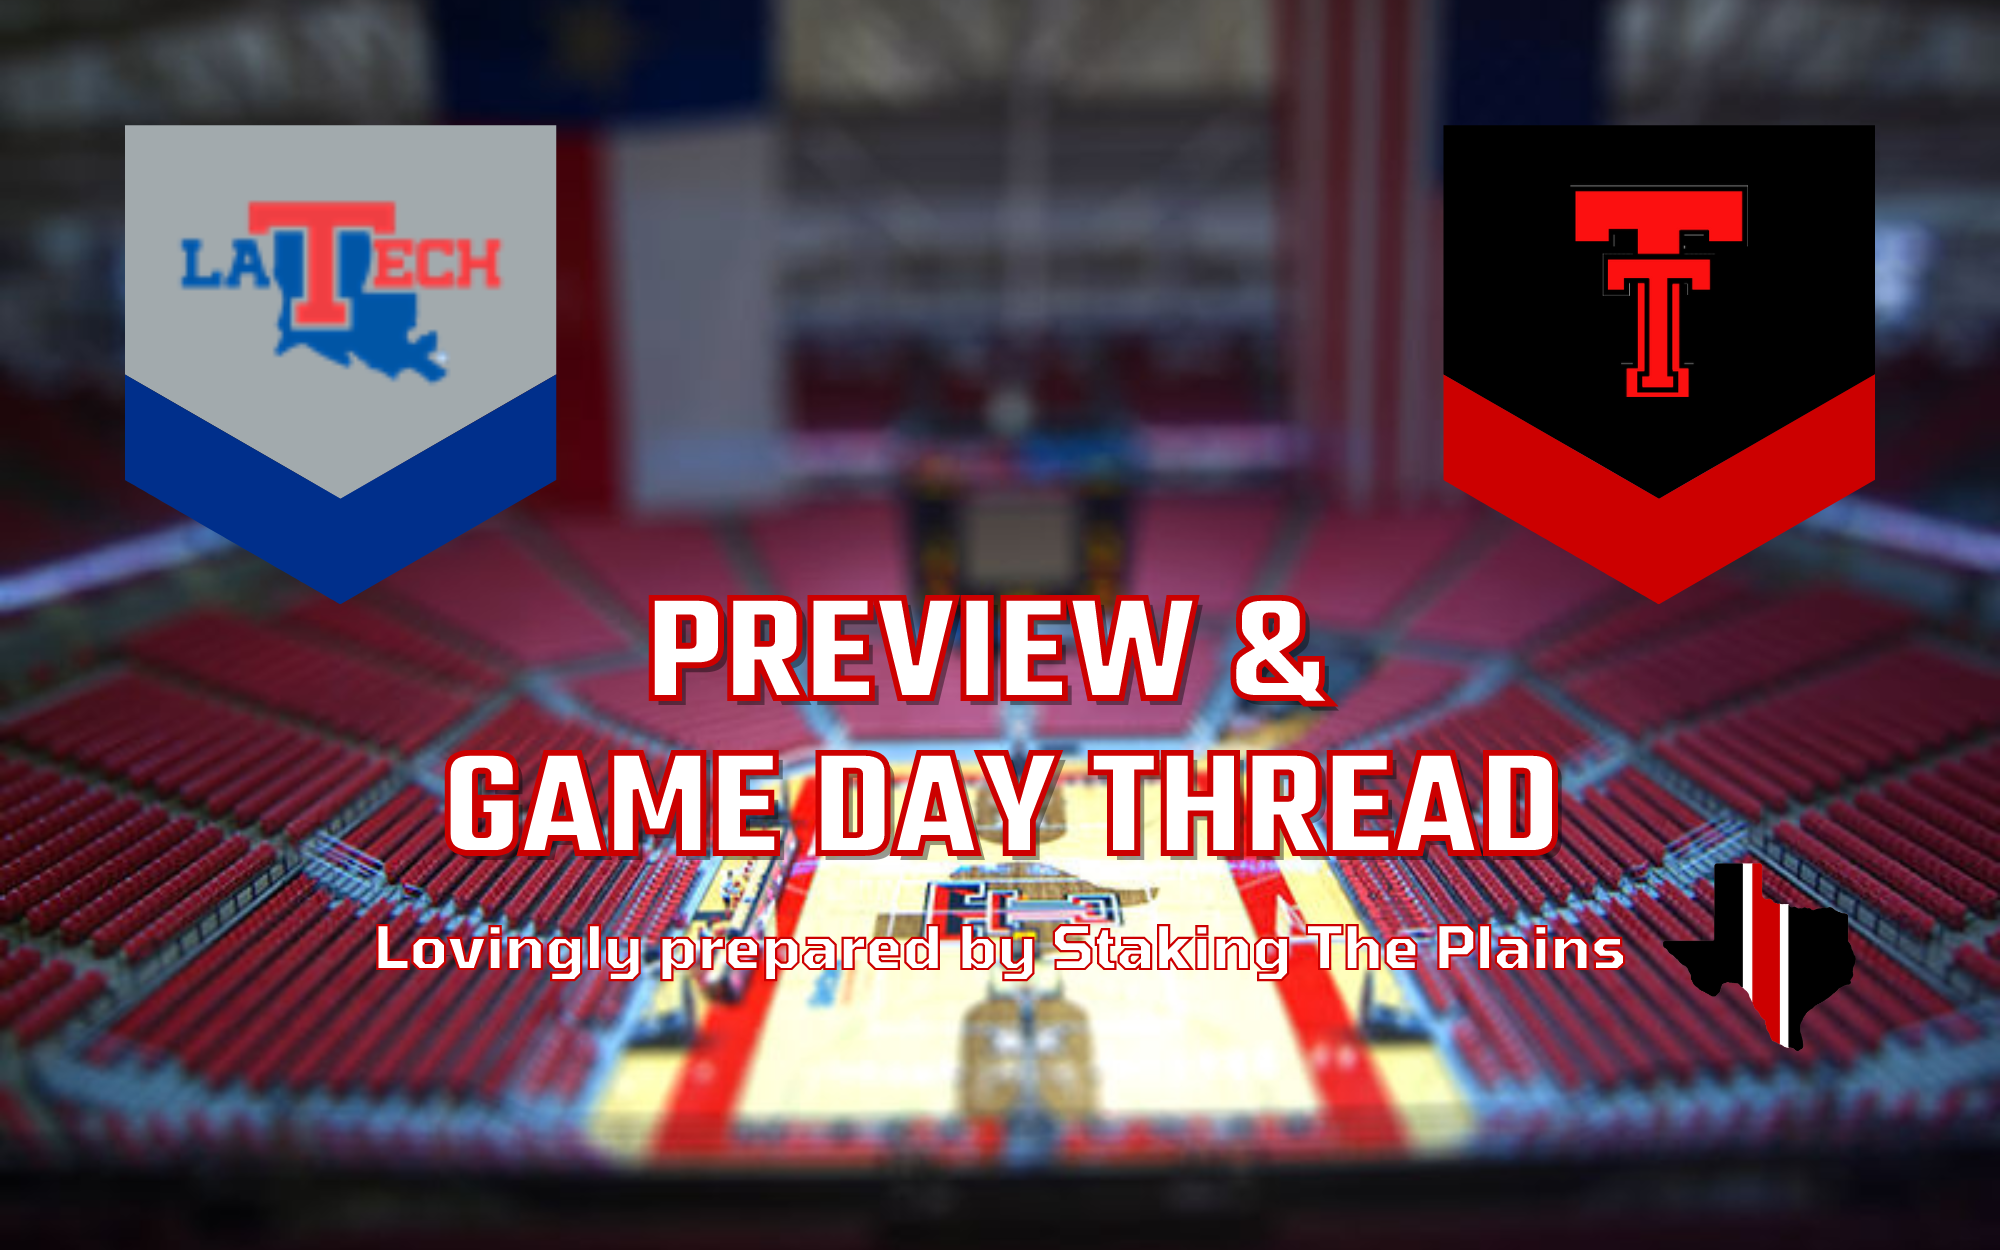 Preview & Game Day Thread: Louisiana Tech vs. Texas Tech